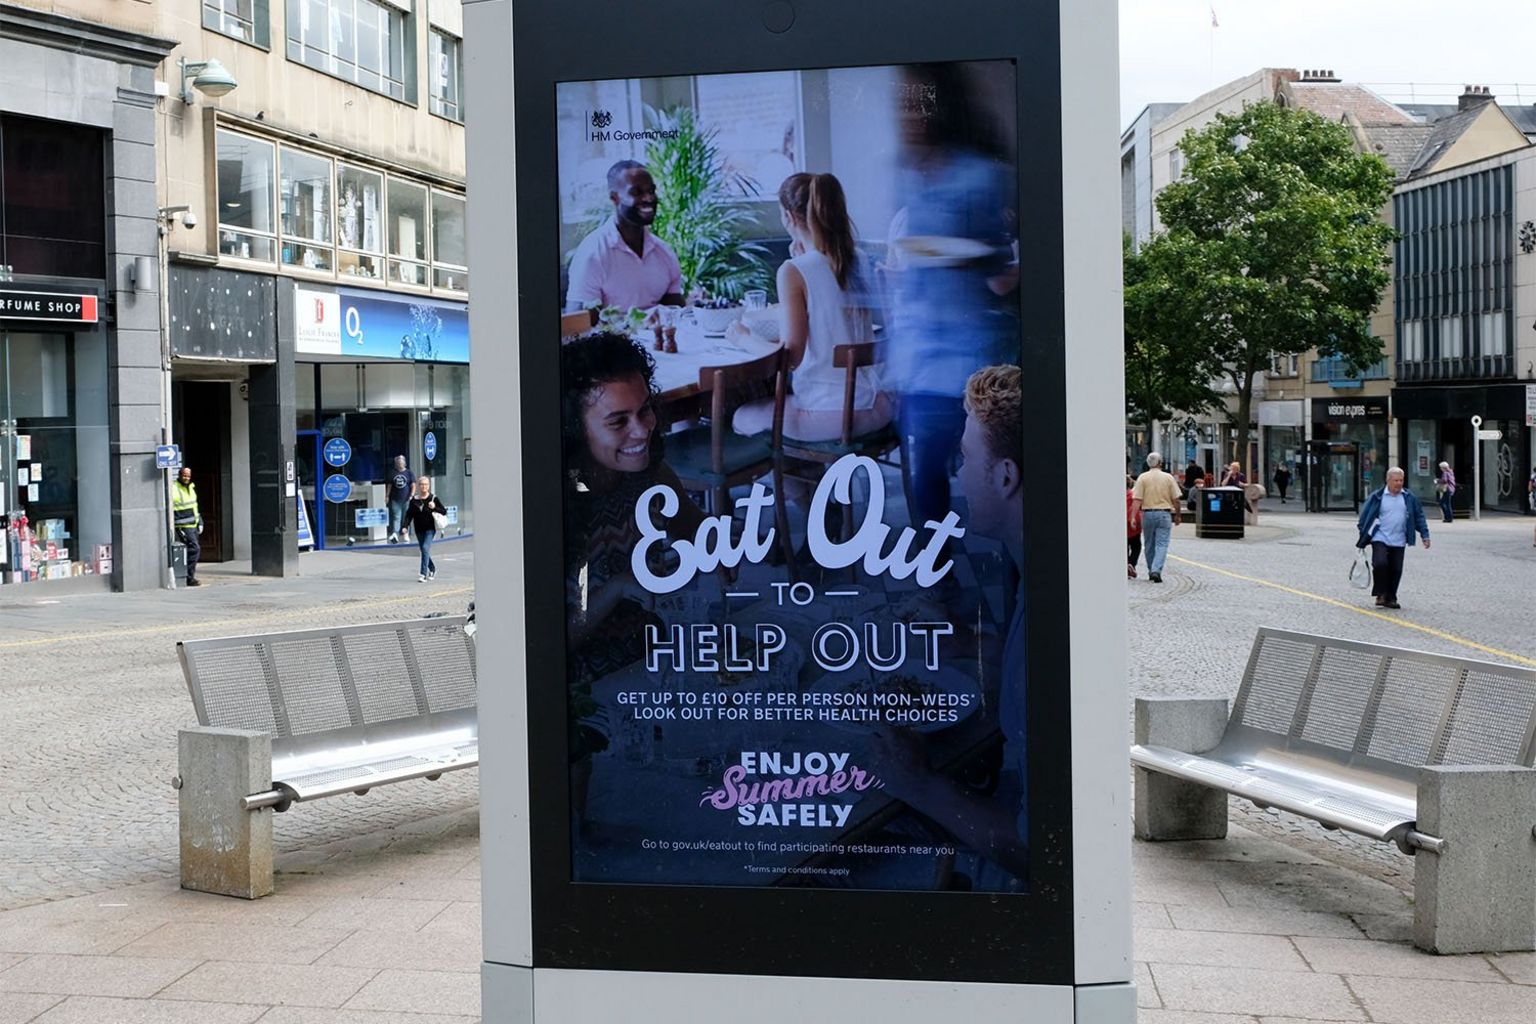 Реклама программы "Ешьте, чтобы помочь", Шеффилд, август 2020 г.